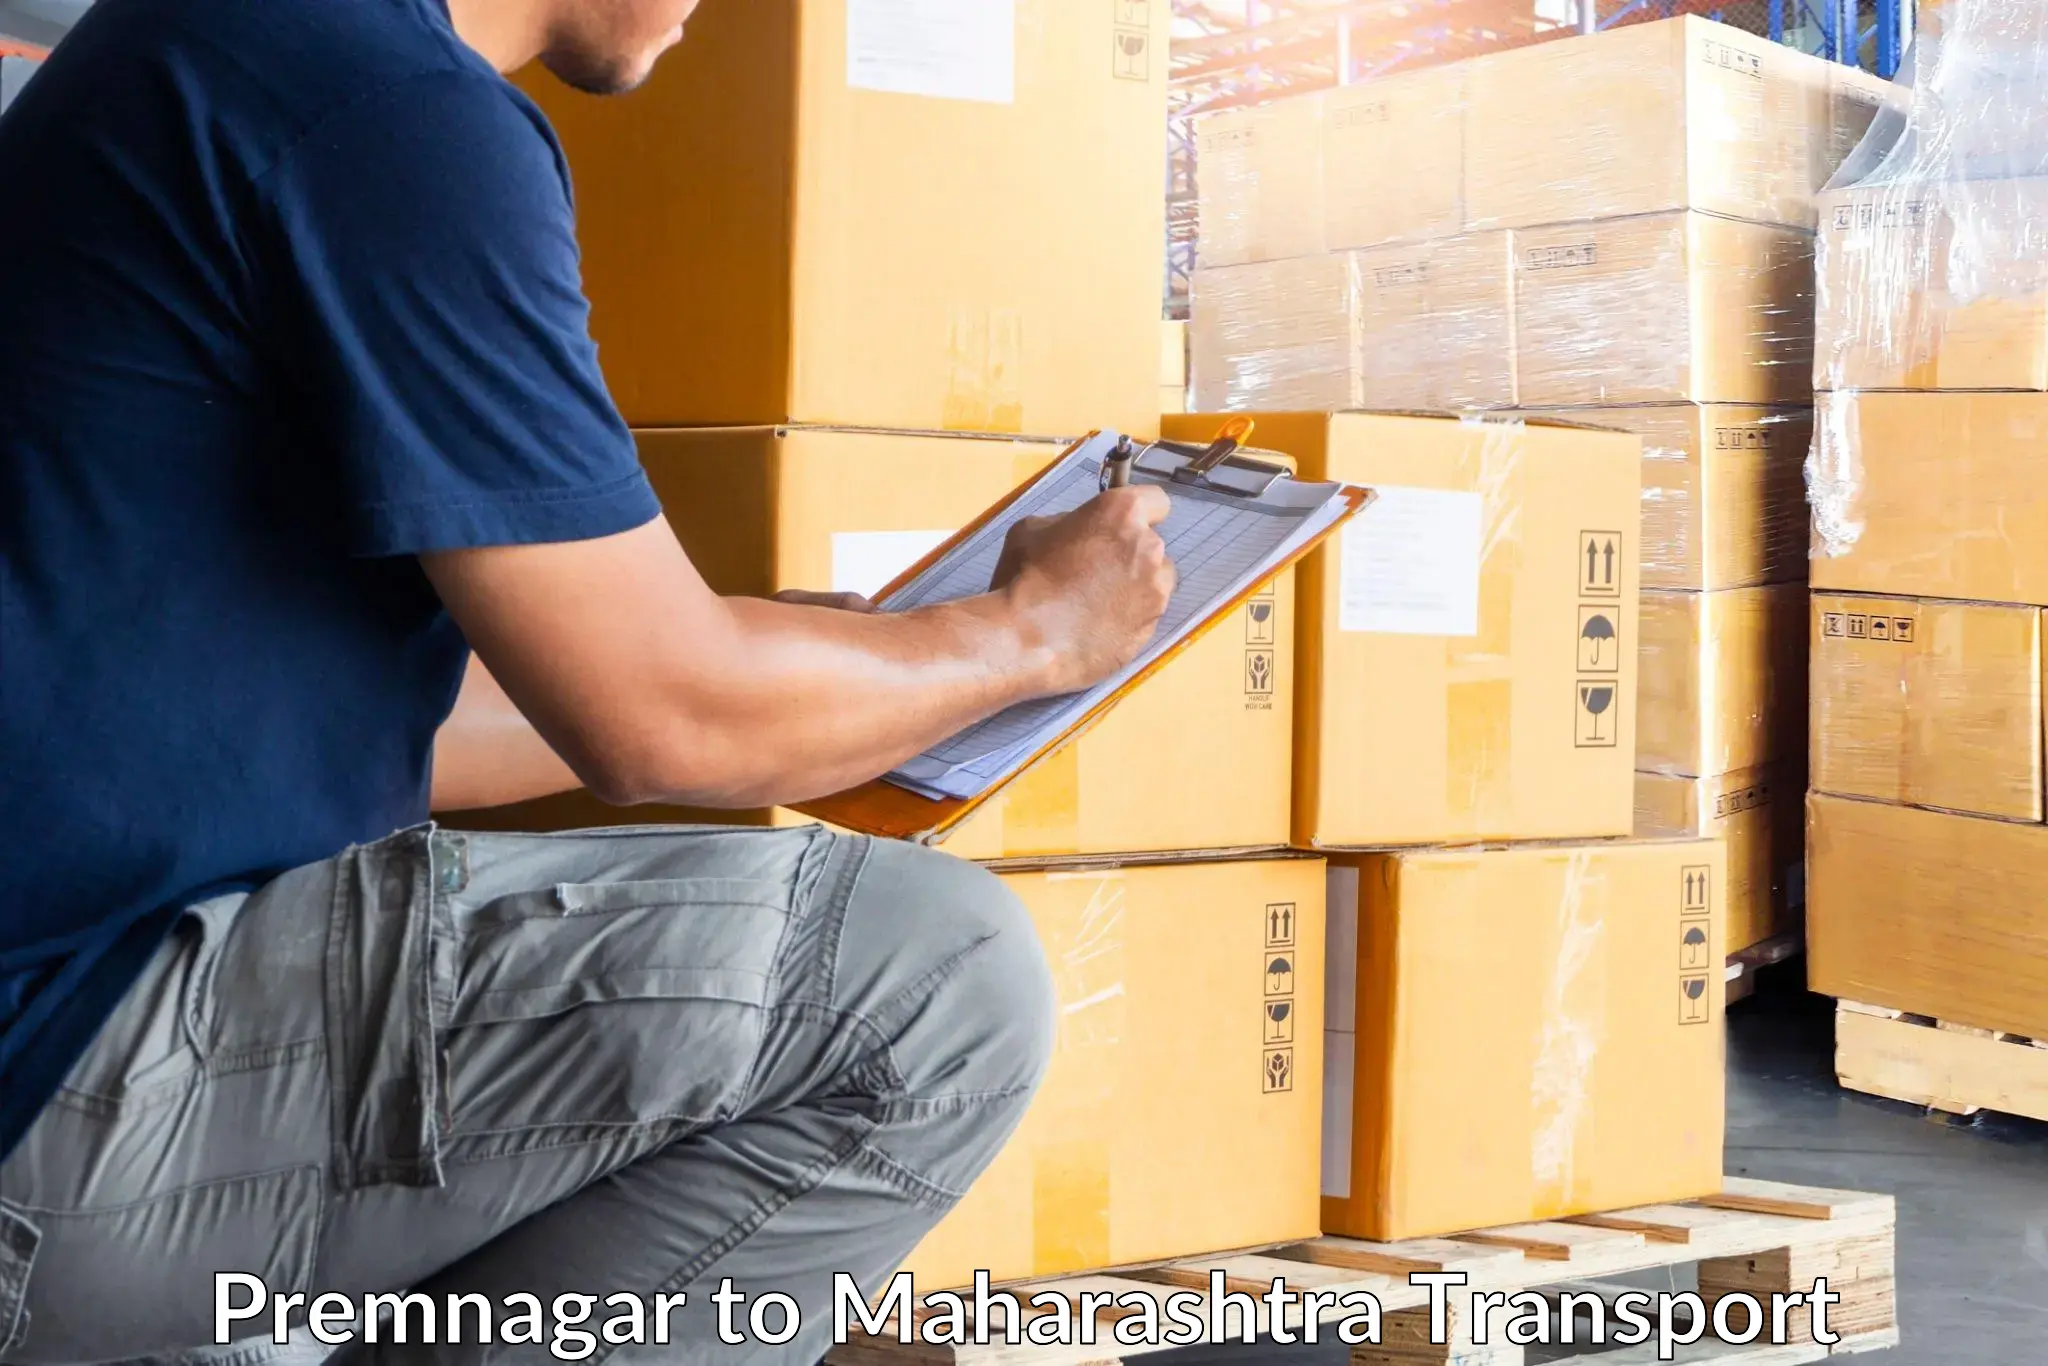 Delivery service Premnagar to Gadchiroli